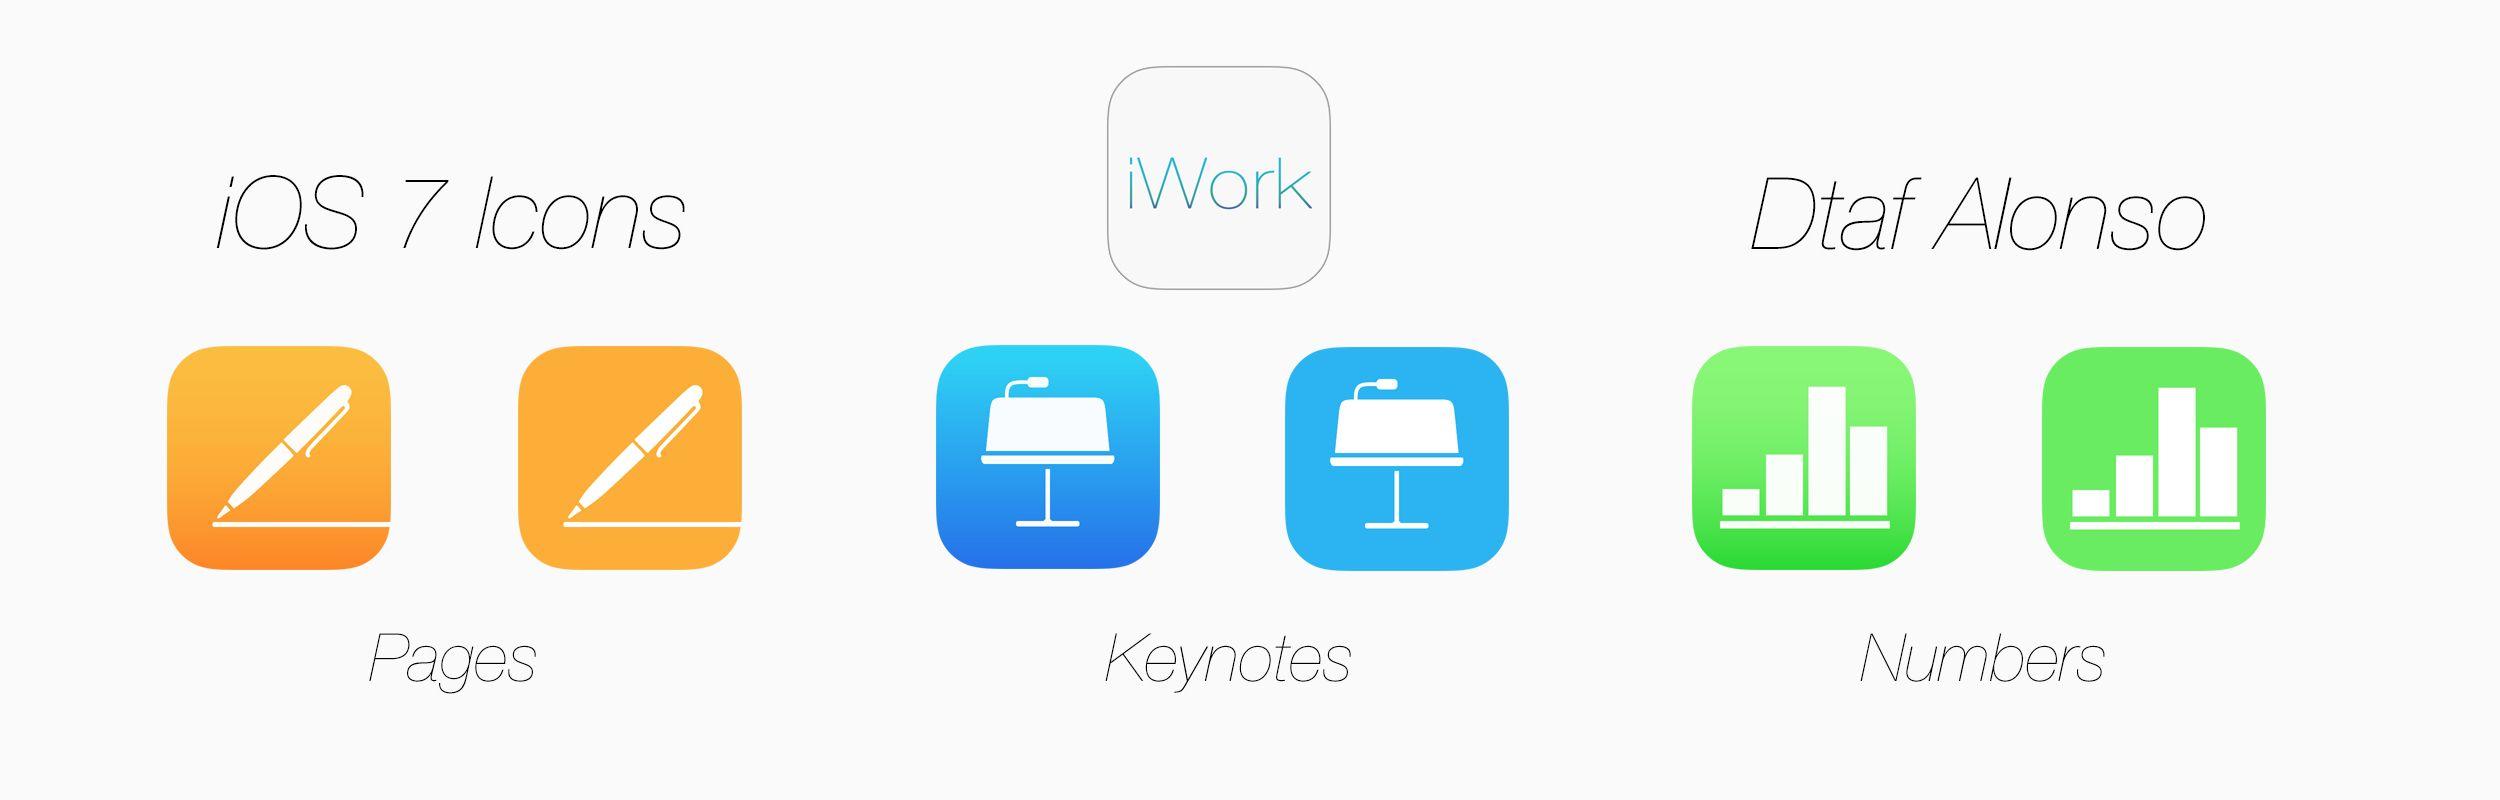 Iwork Logo - iWork icons